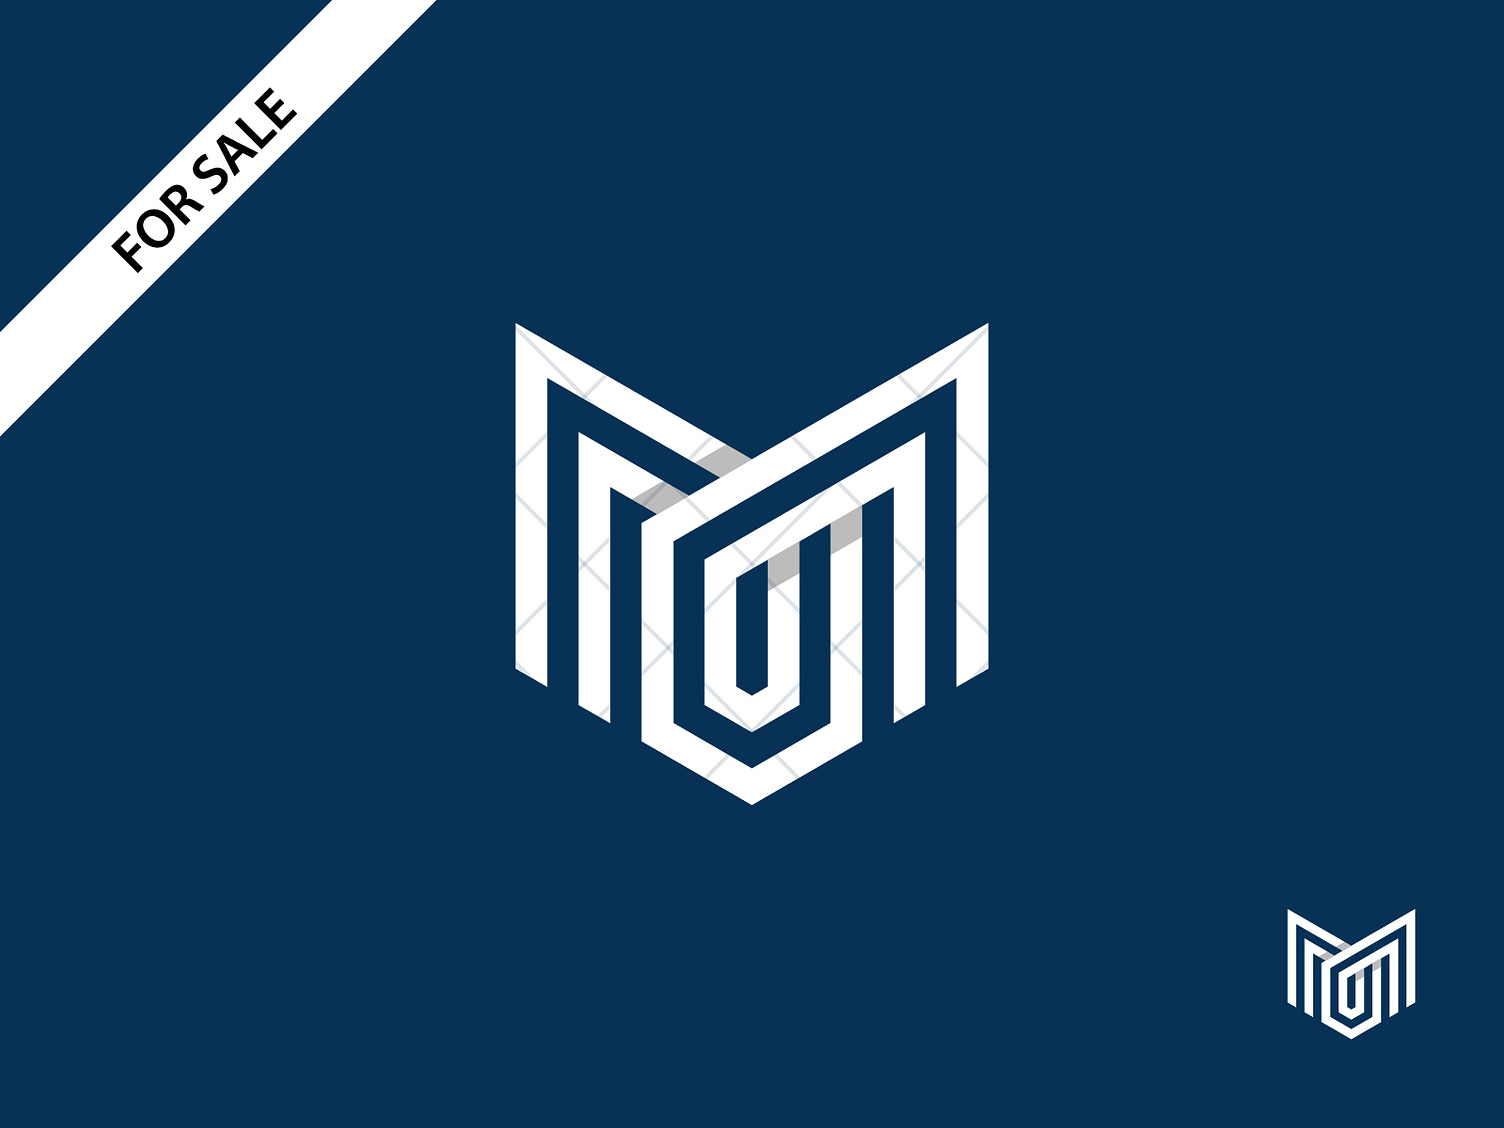 MO Logo by Sabuj Ali on Dribbble